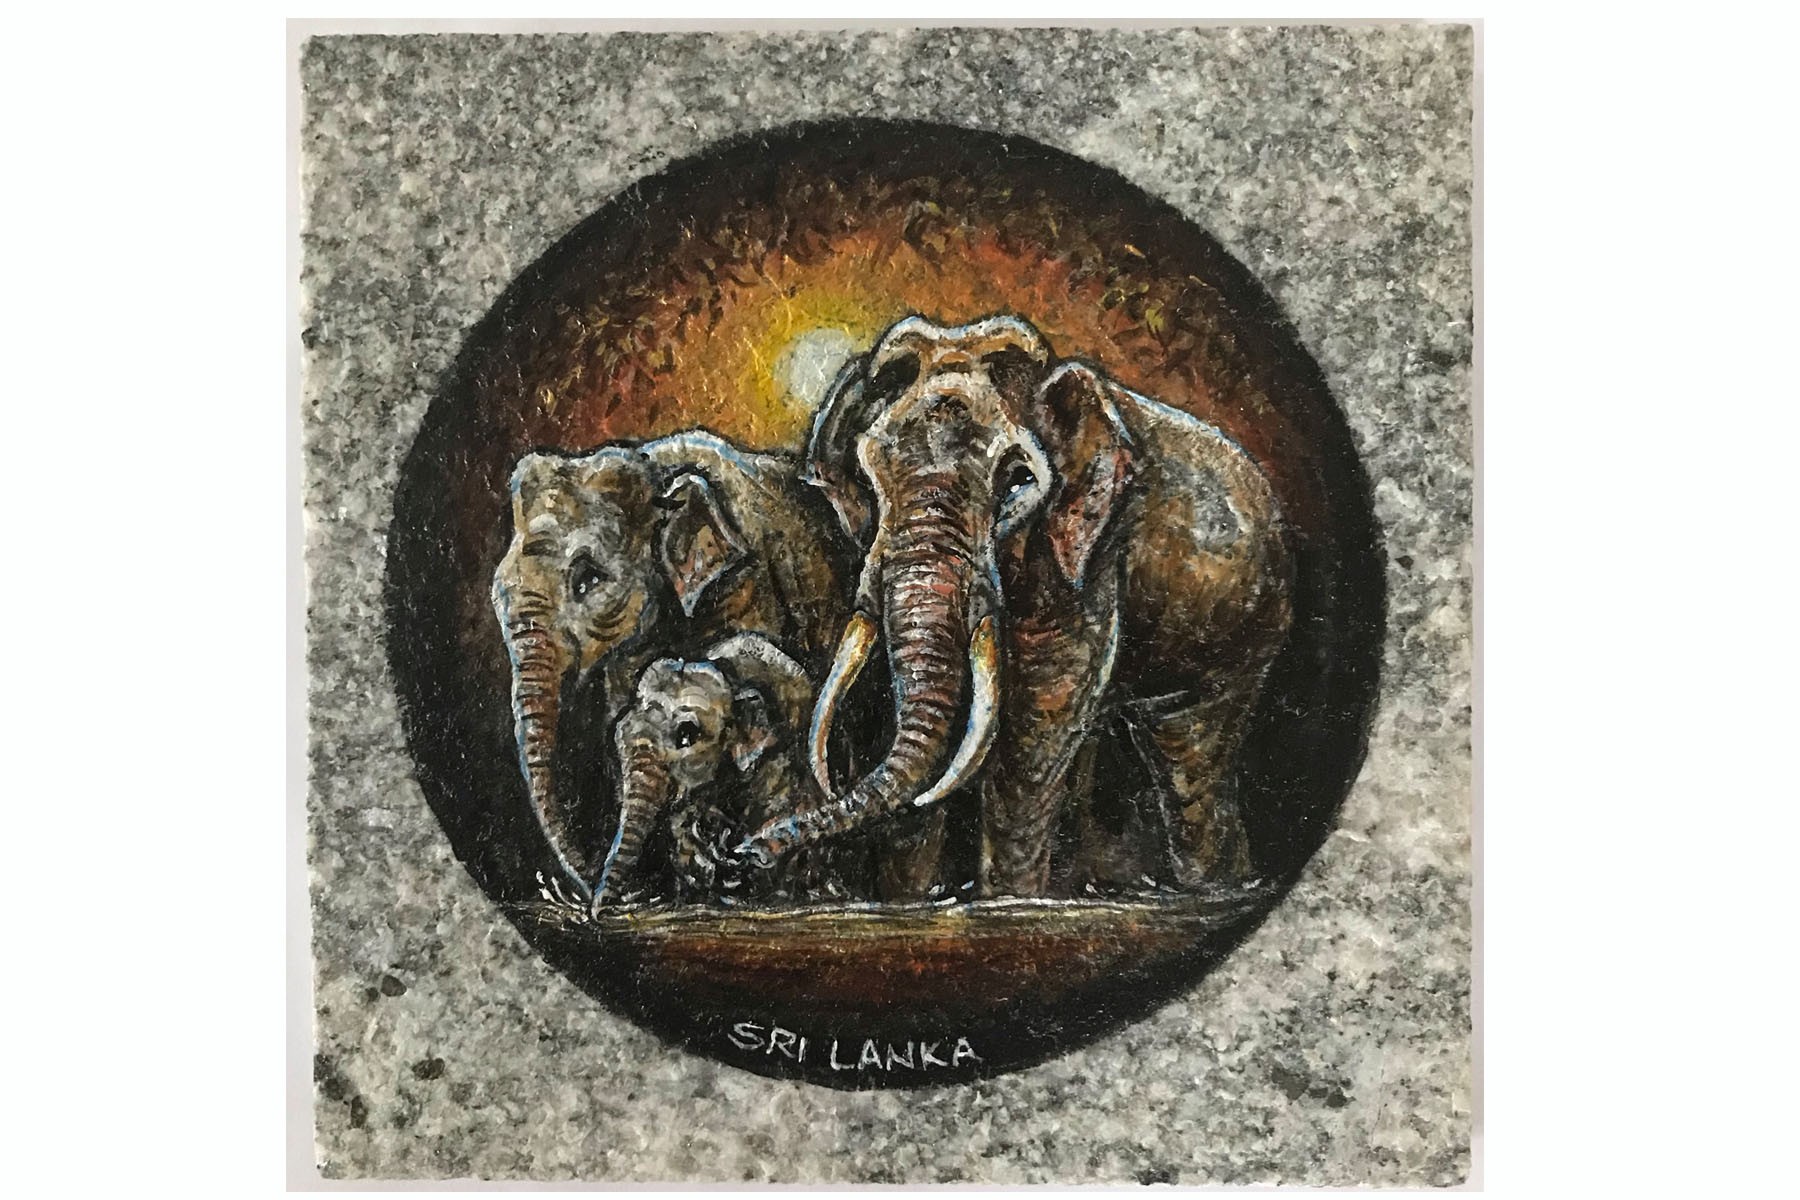 "Thunpath Raana" (Elephants) by H Mapalagama